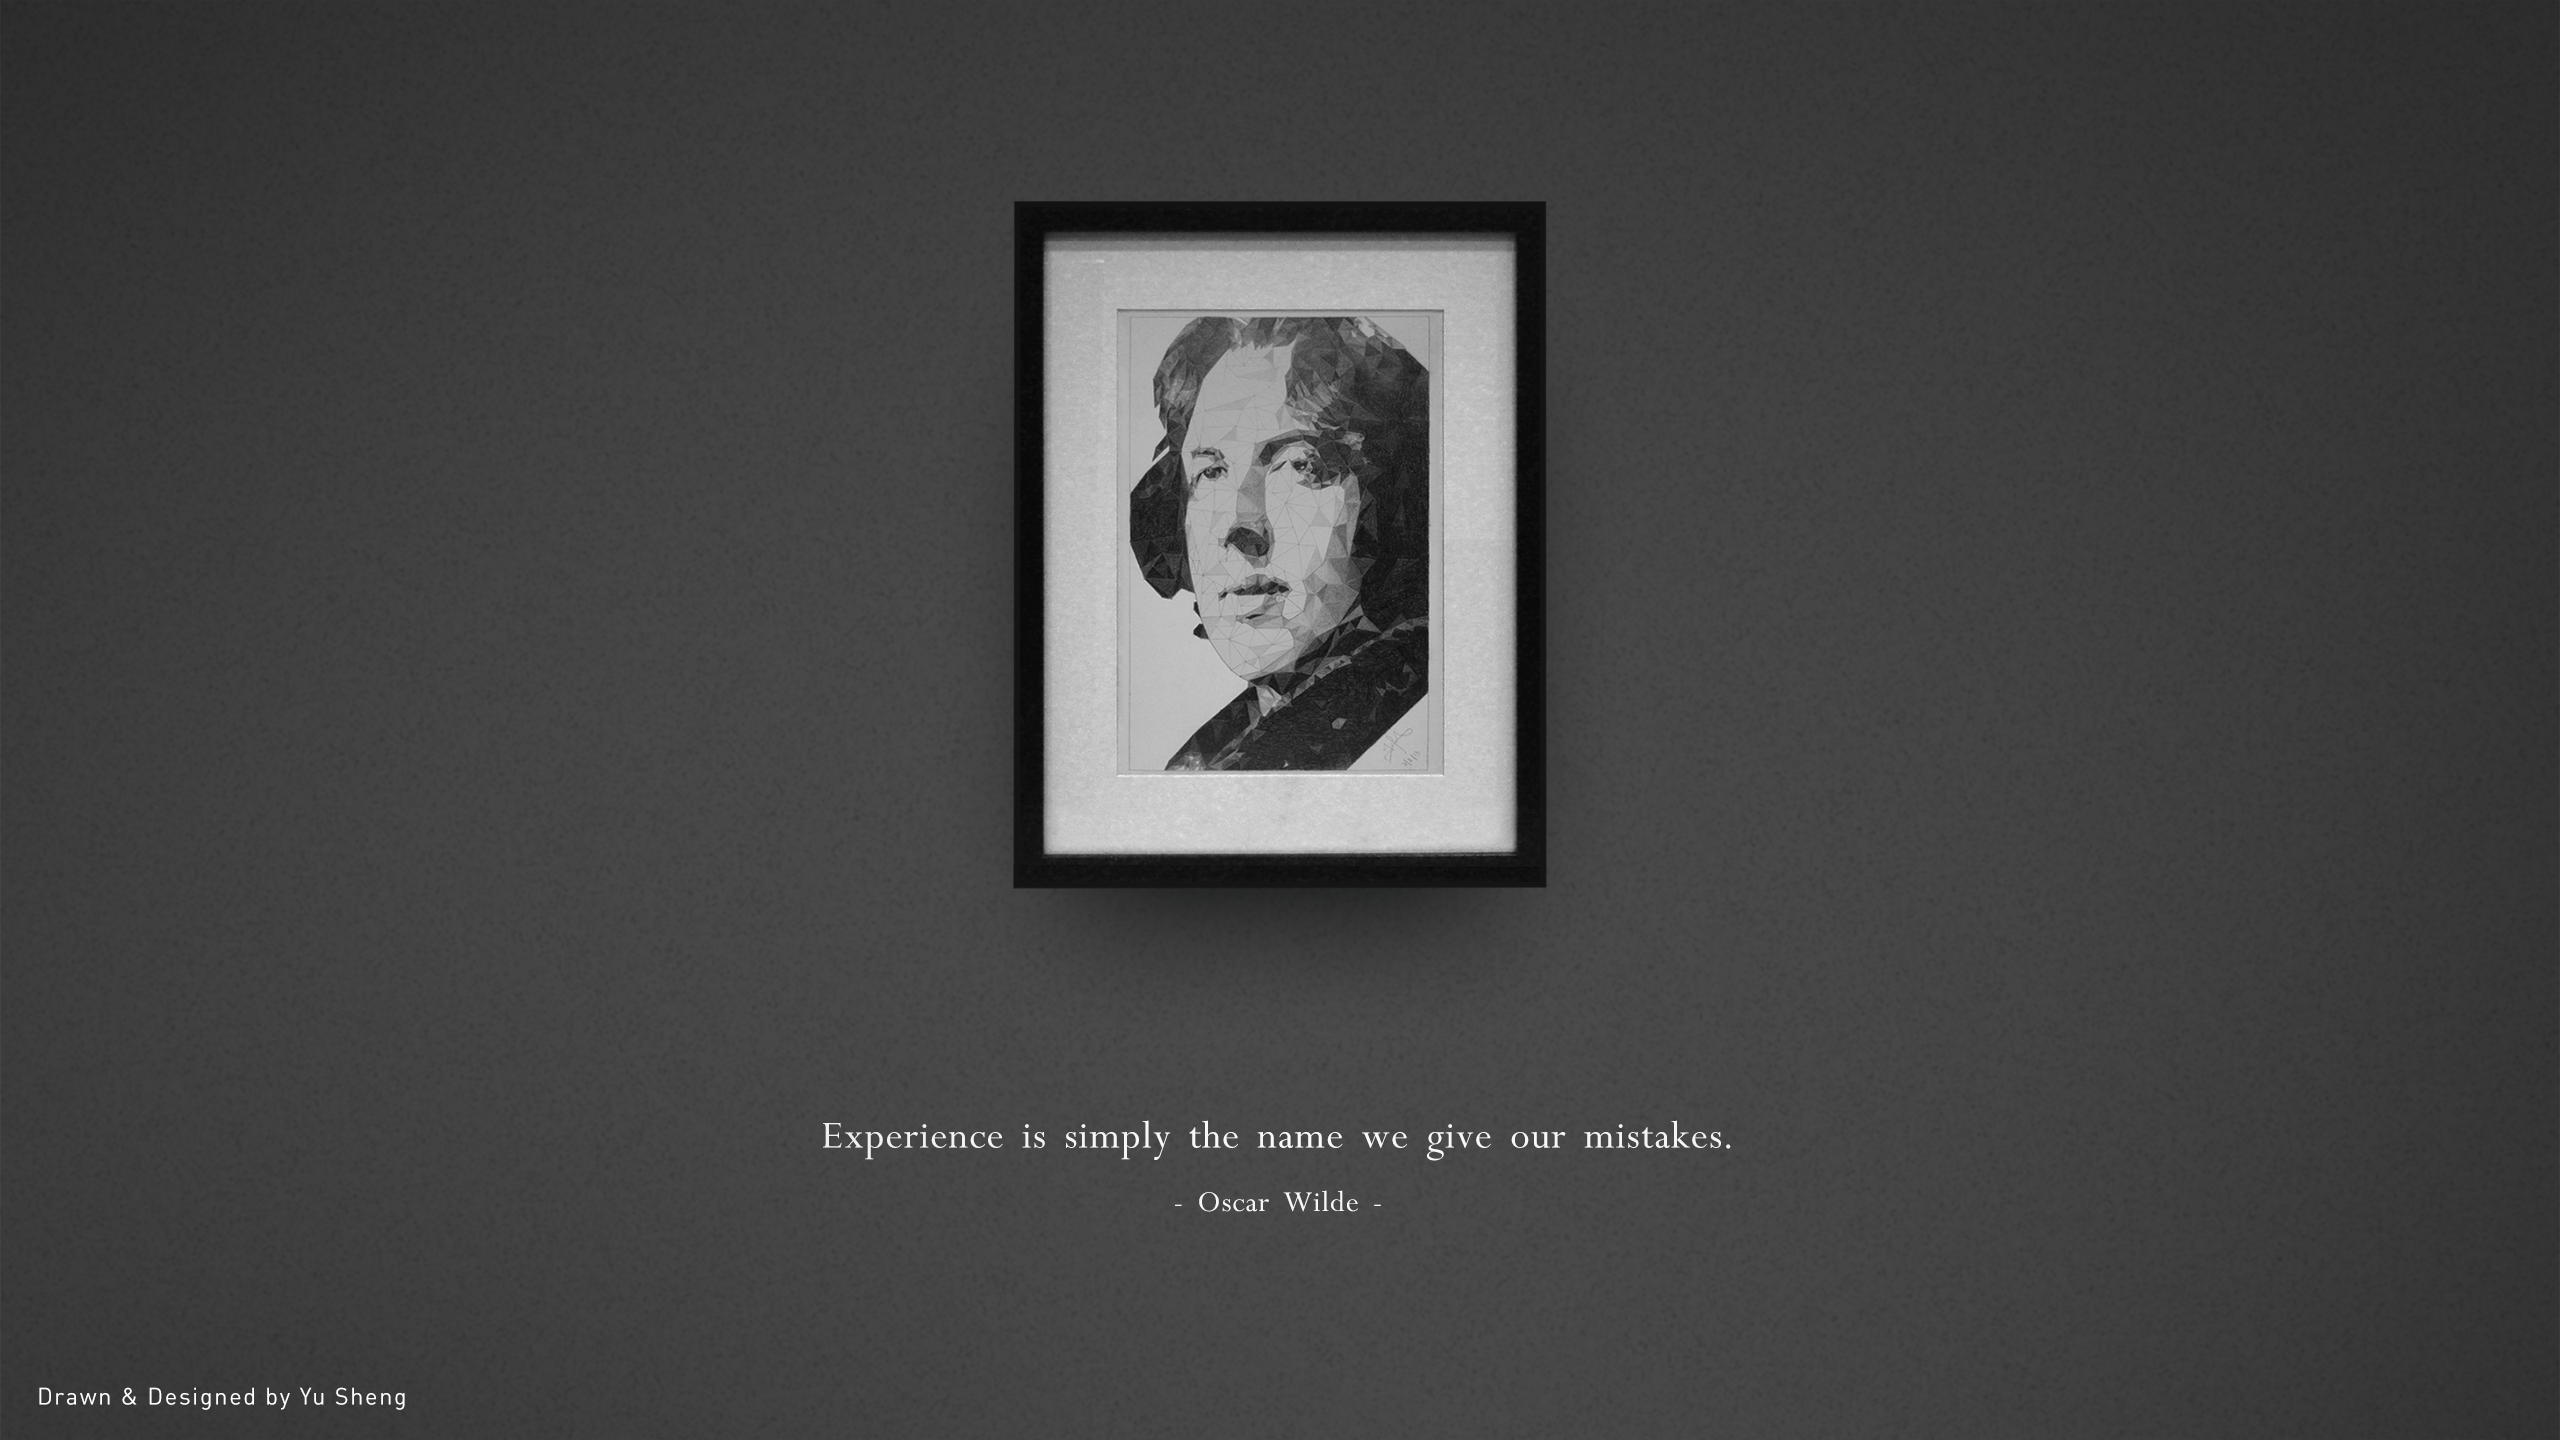 Oscar Wilde Wallpapers